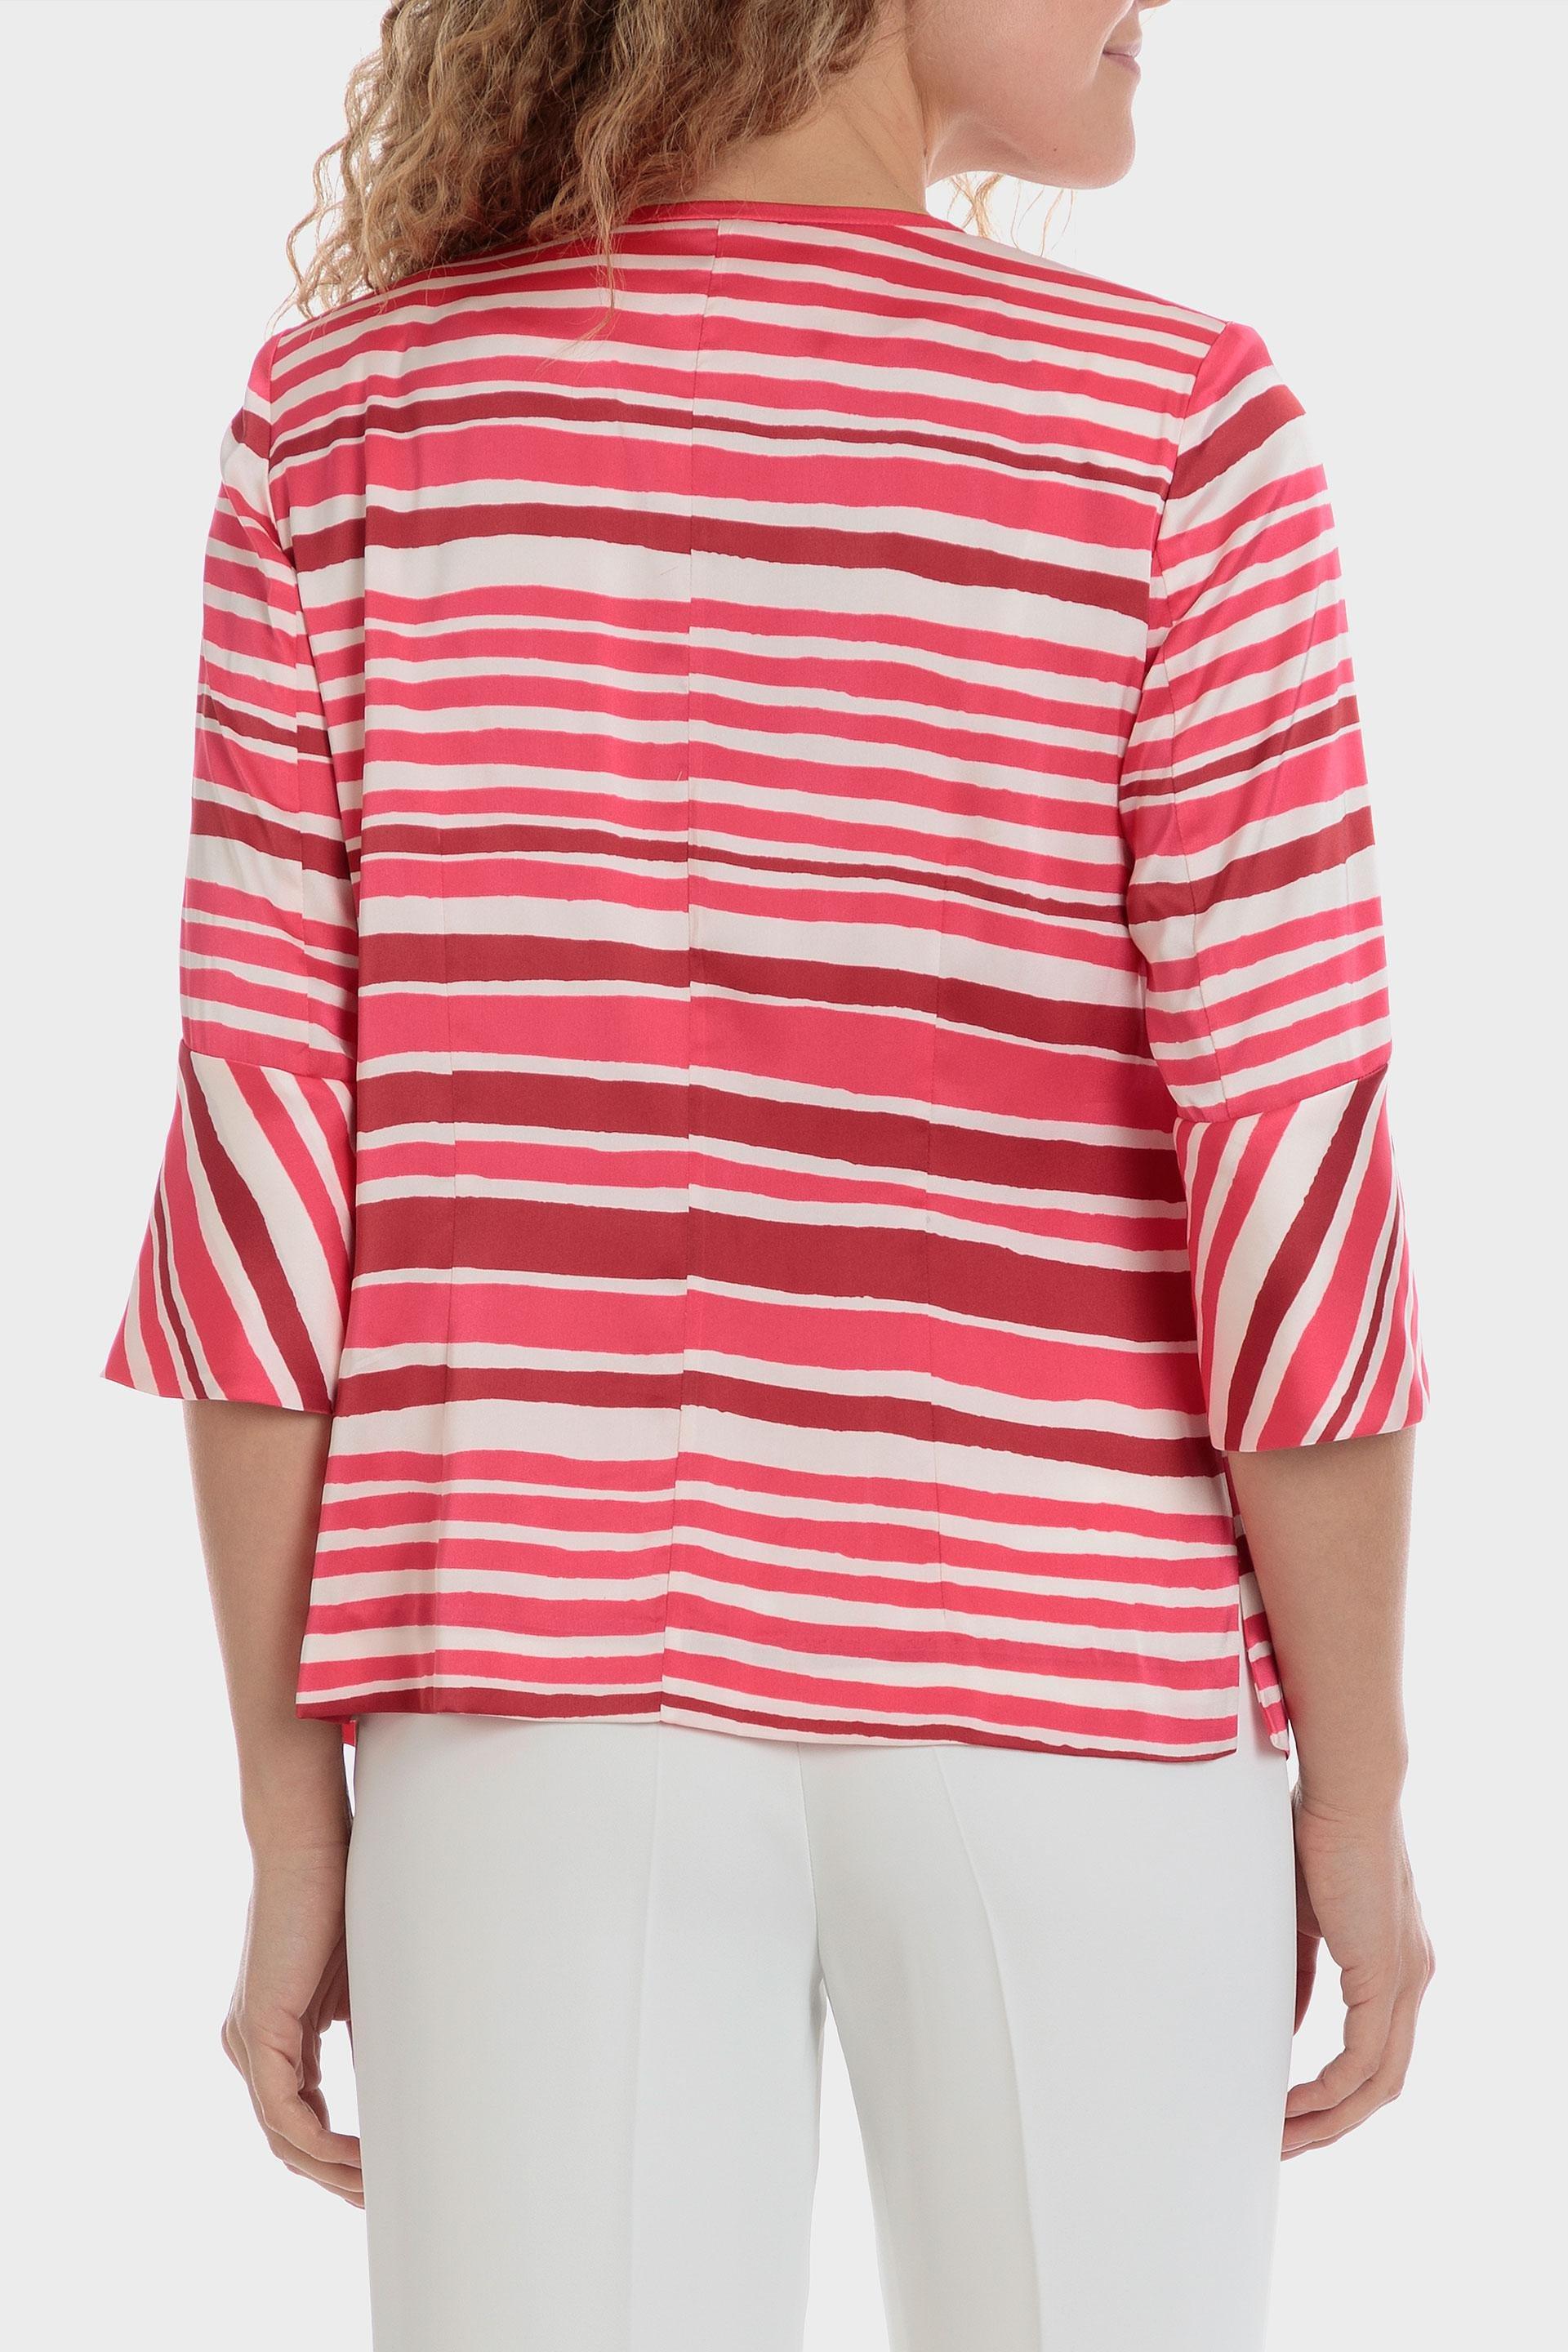 Punt Roma - Pink Striped Jacket